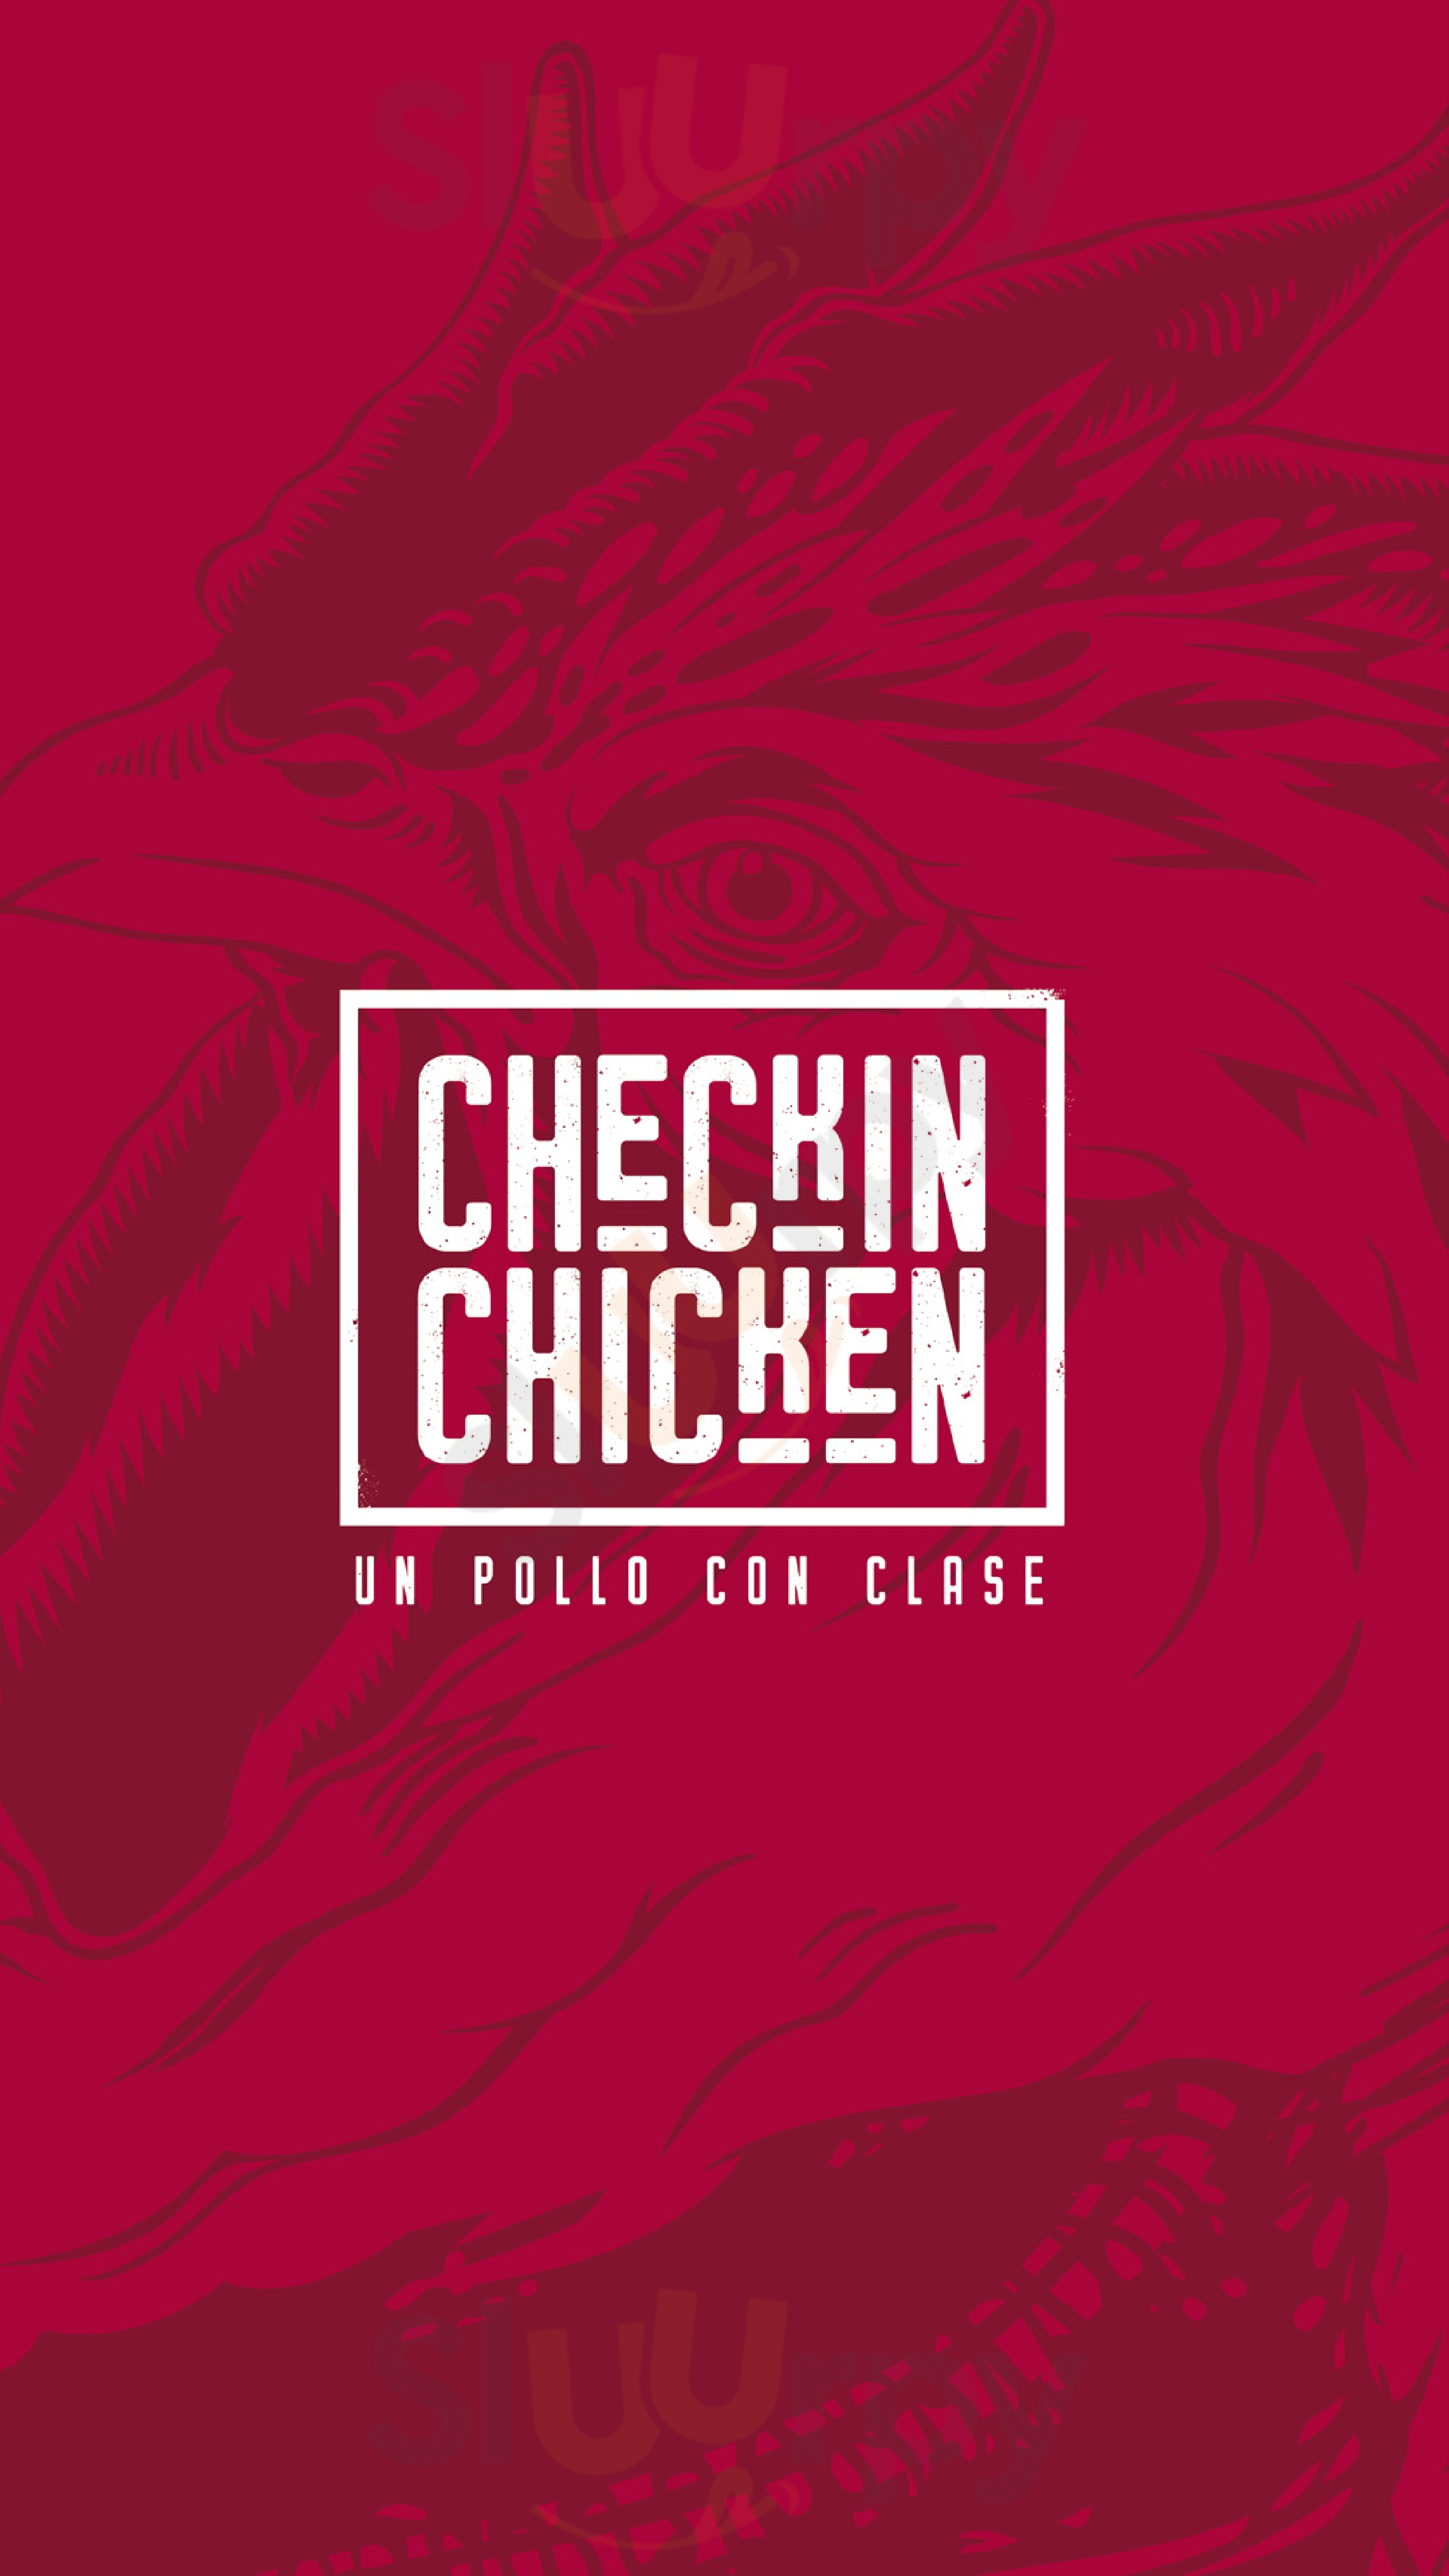 Checkin Chicken Barranquilla Menu - 1